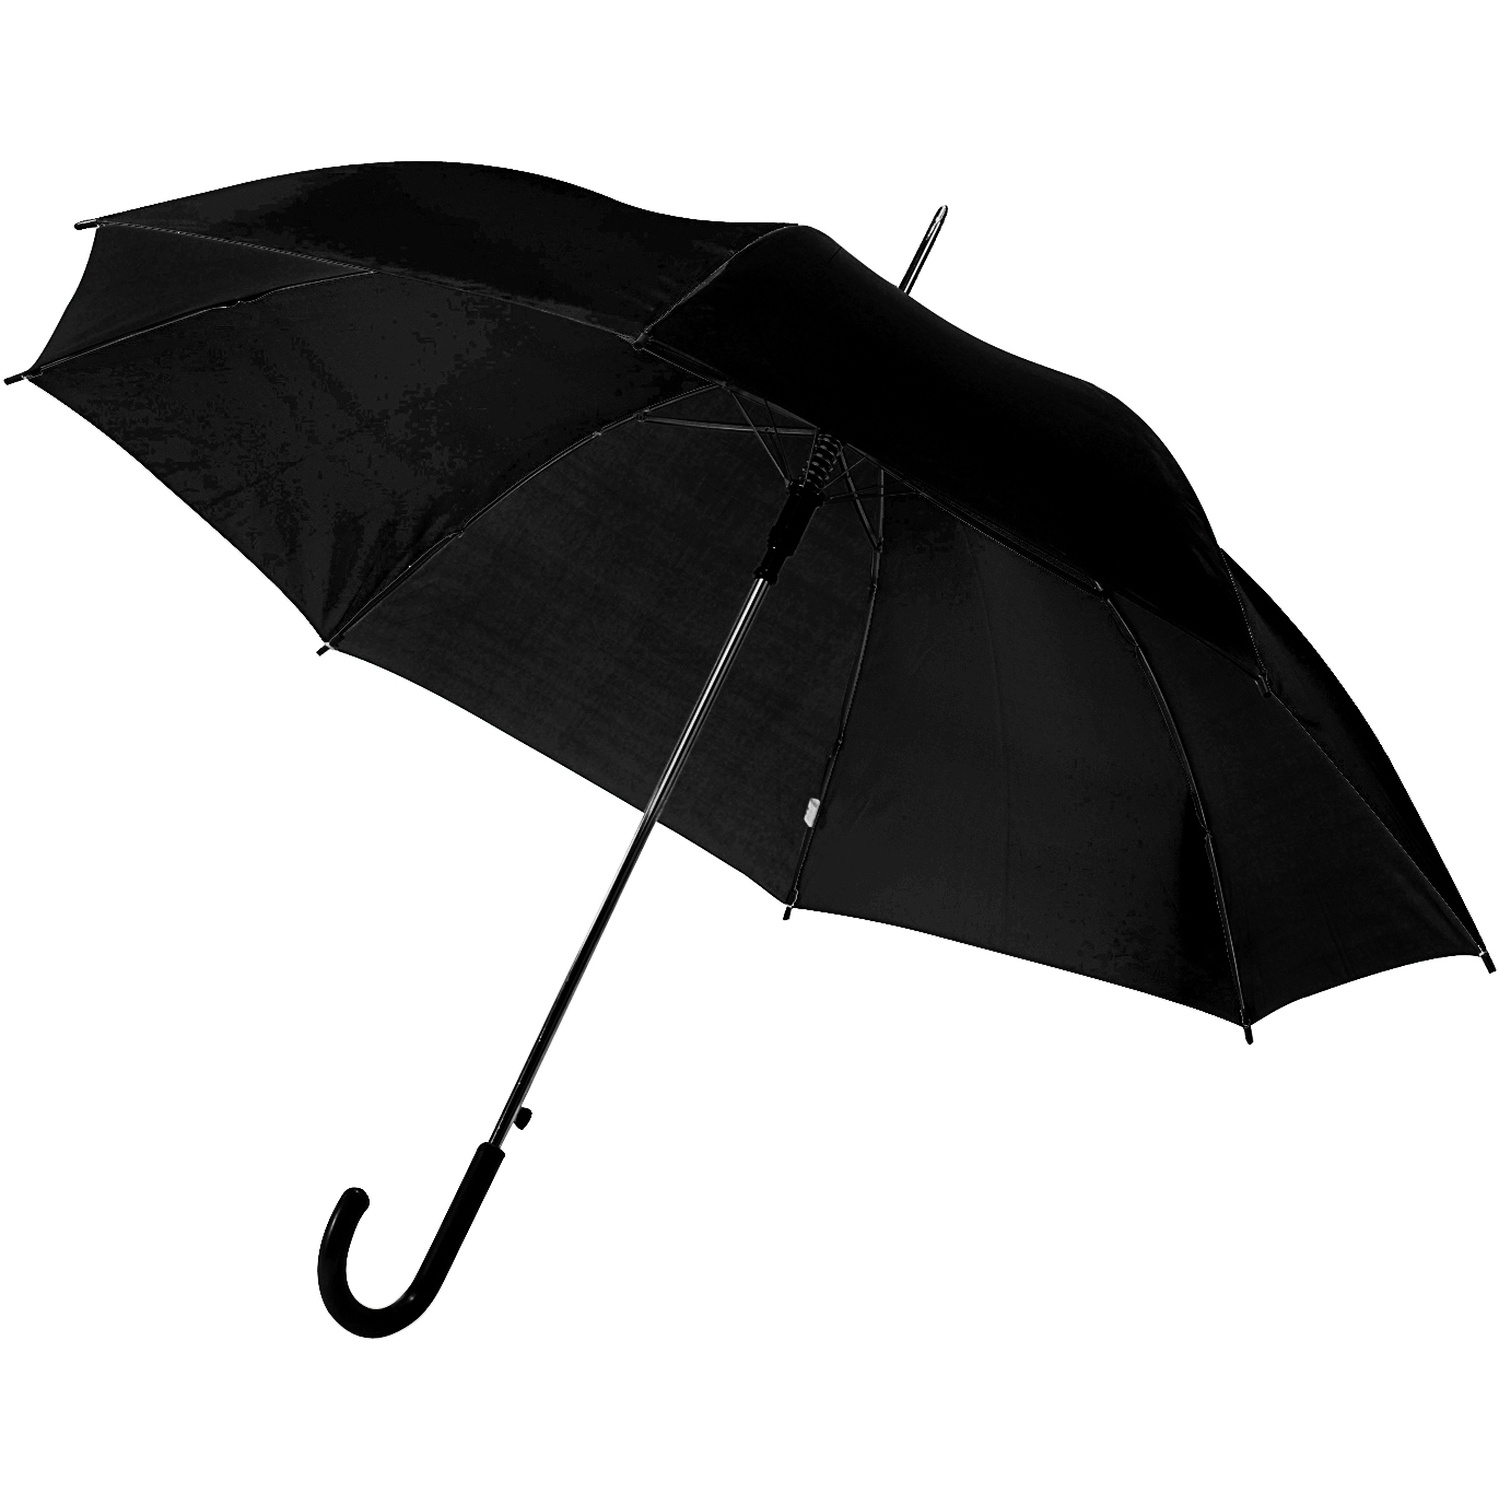 004088 001999999 3d045 ins pro01 fal - Storm-proof umbrella